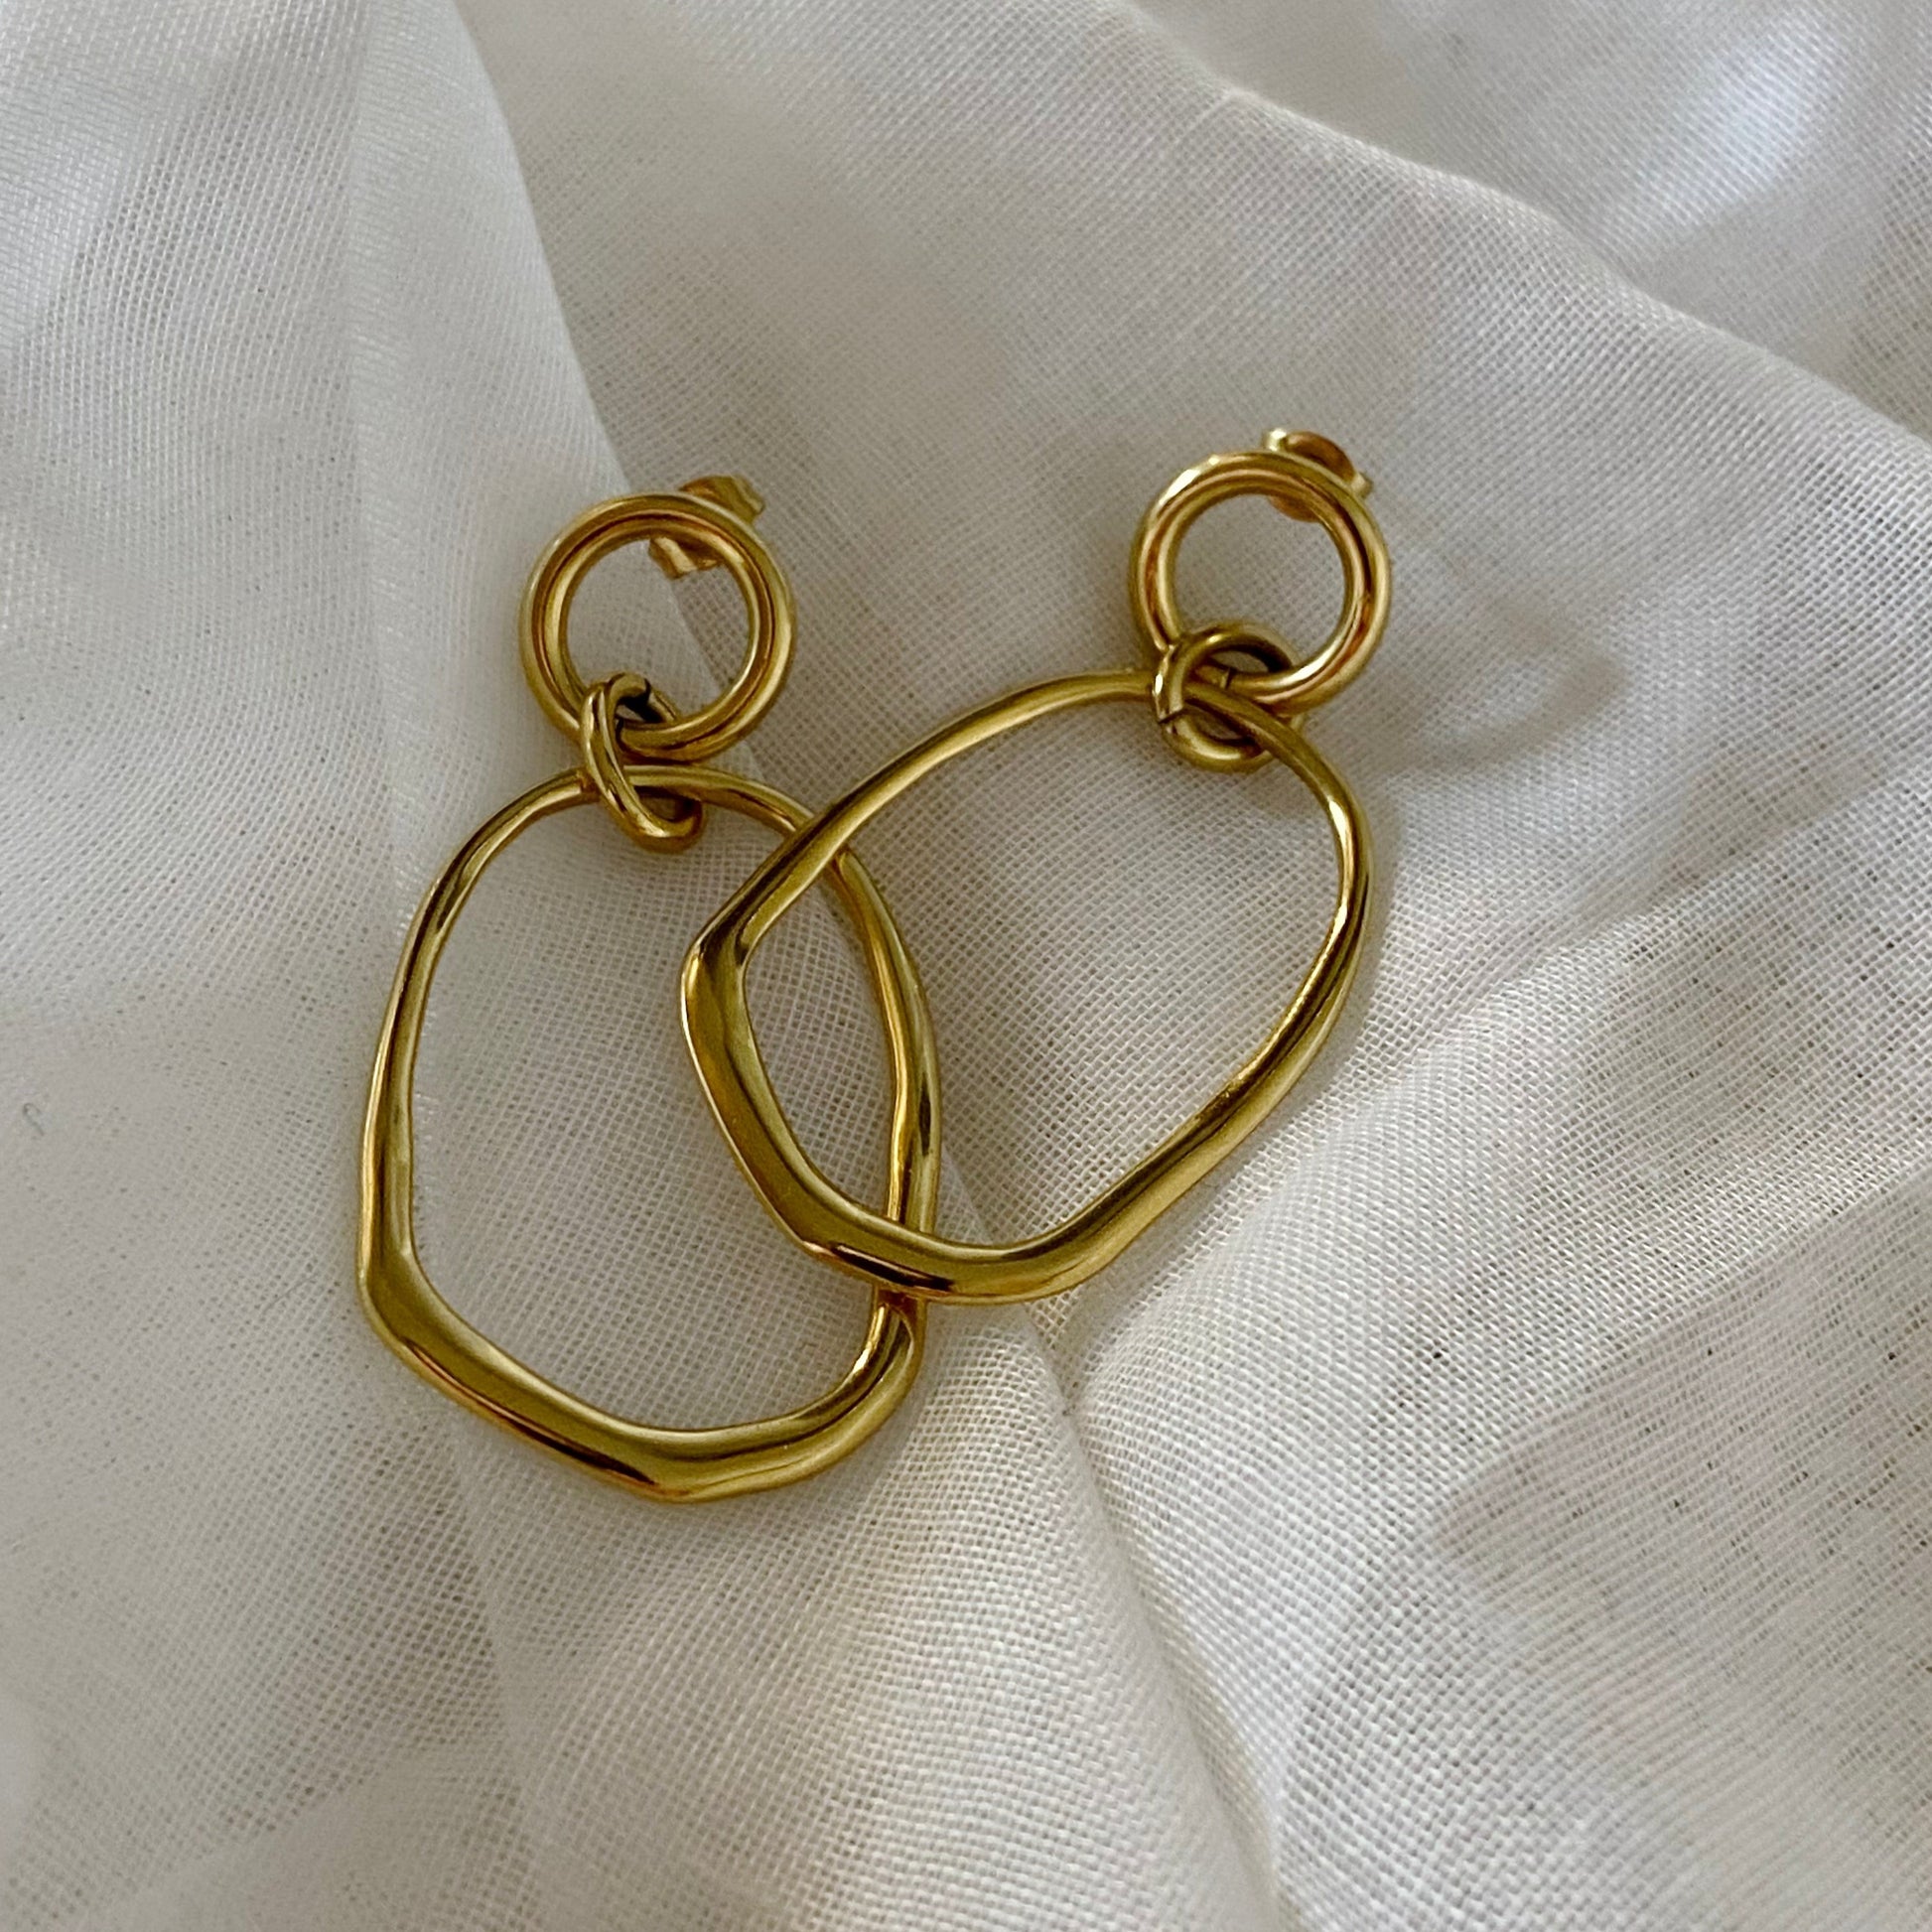 Boucles d'oreille acier inoxydable design moderne élégante dorées - Maison Muguette